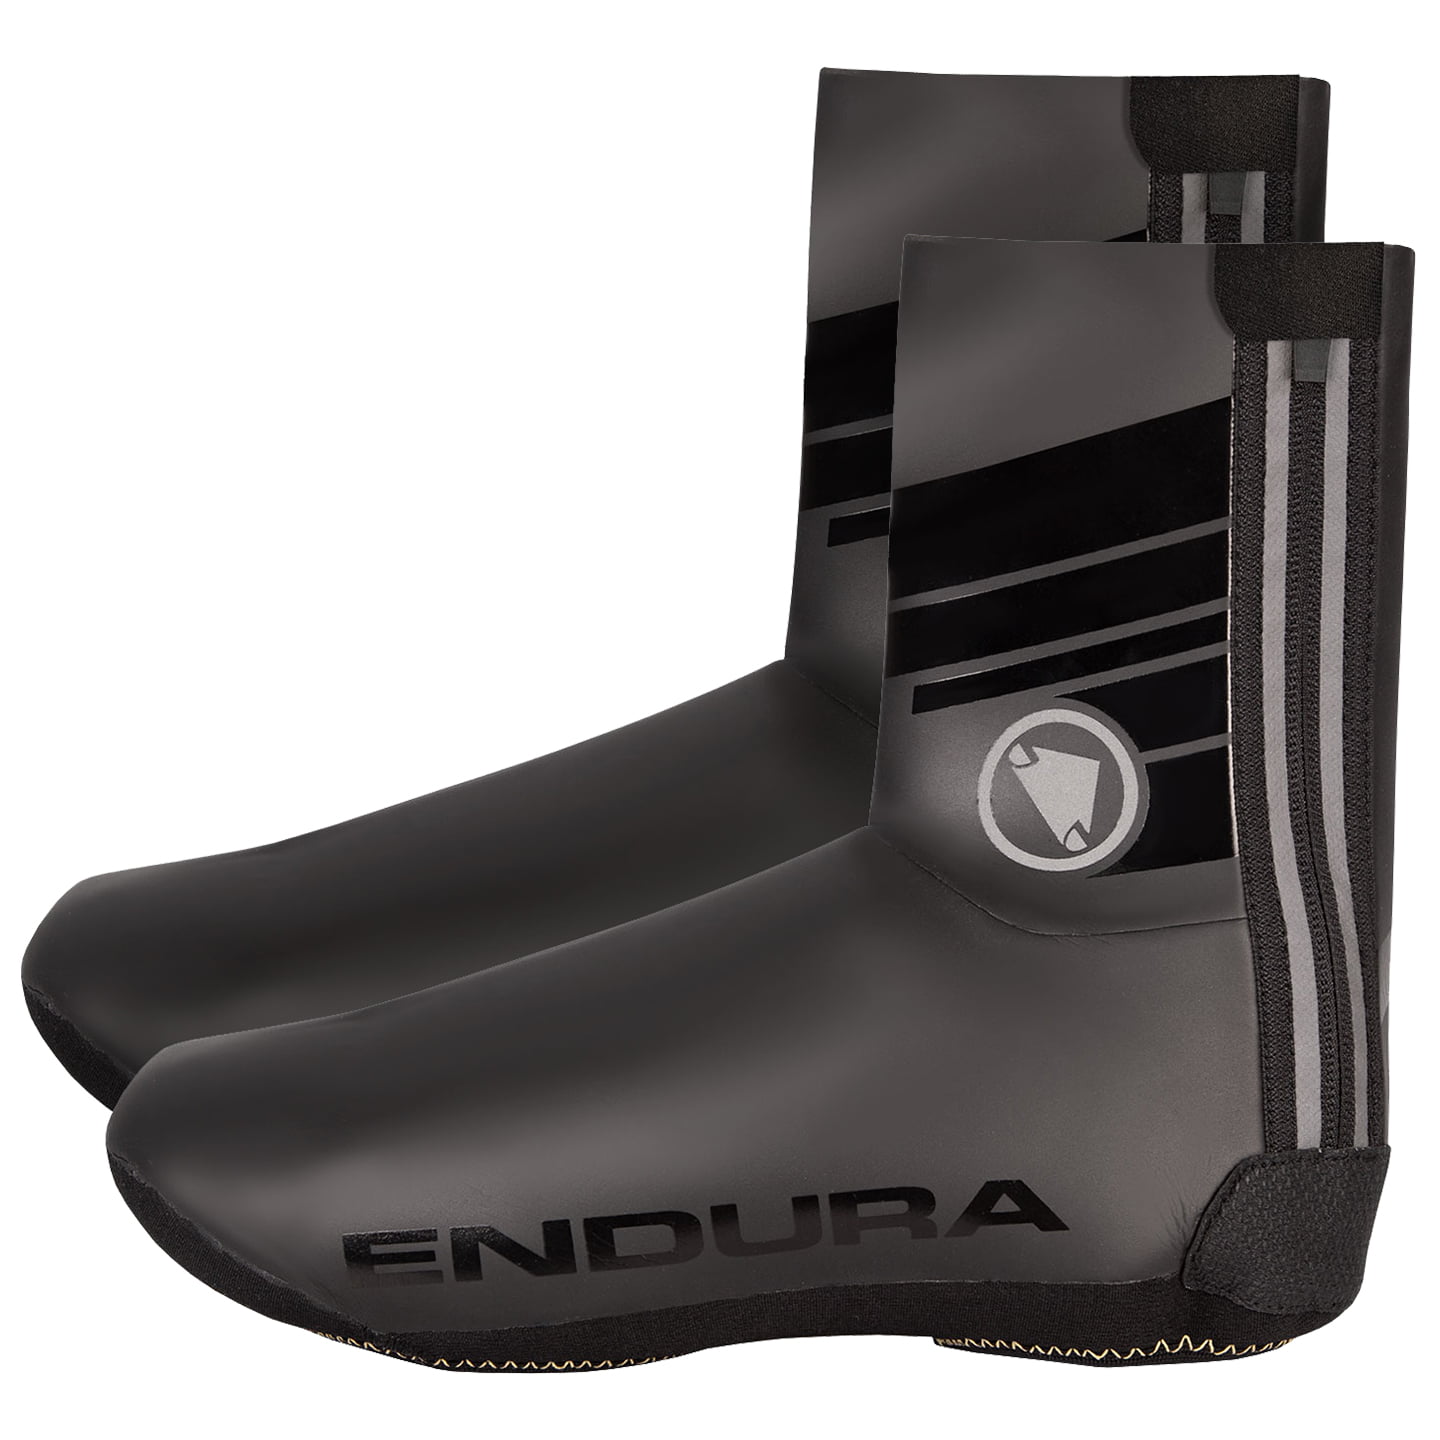 ENDURA Road Bike Rain Shoe Covers Thermal Shoe Covers, Unisex (women / men), size XL, Cycling clothing